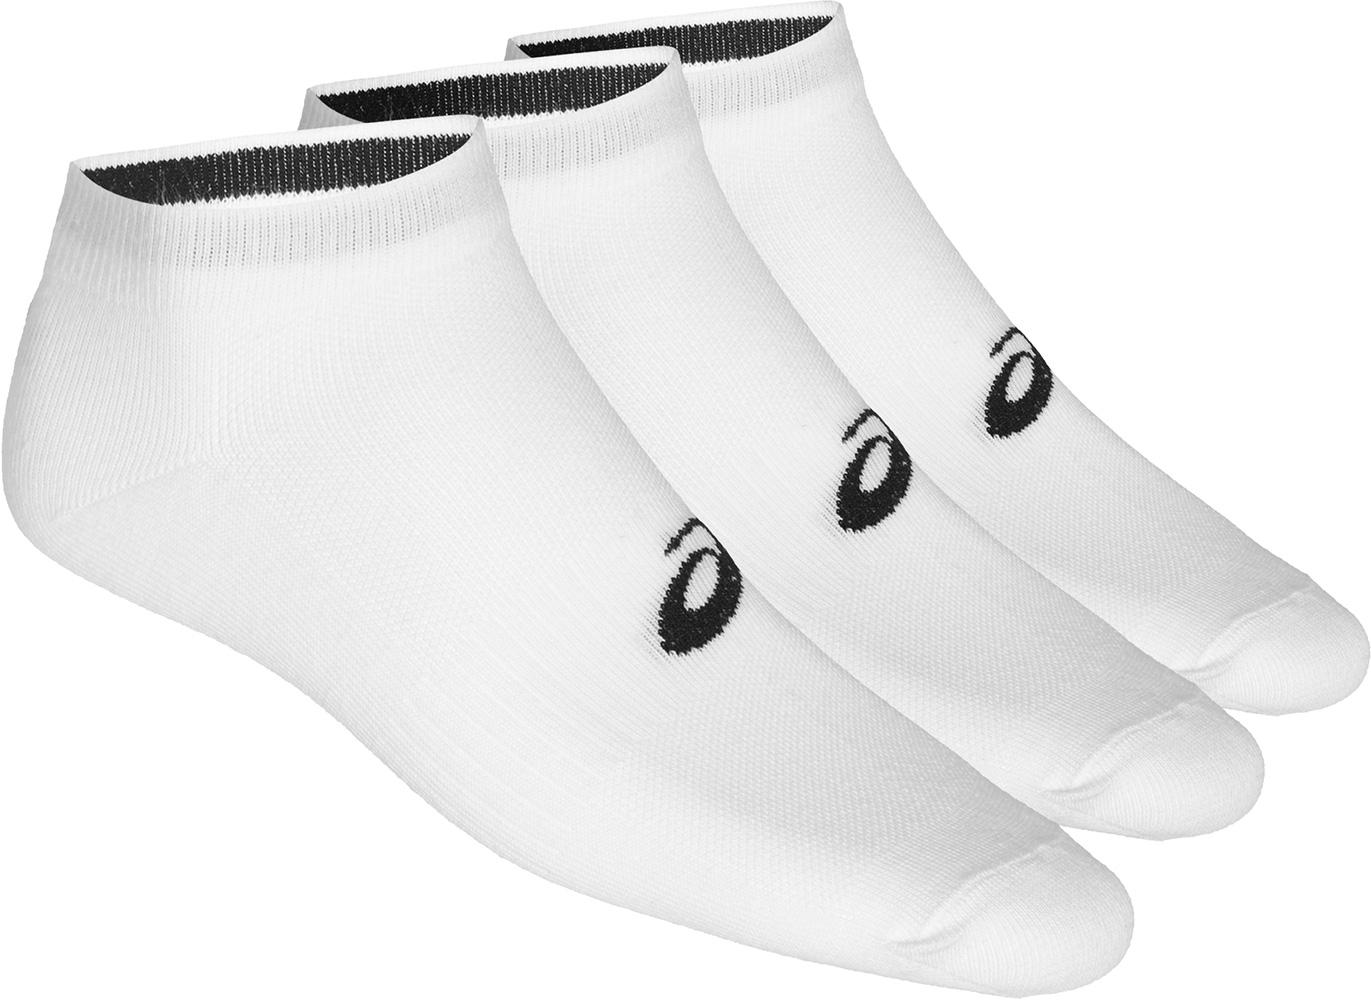 Asics 3ppk Ped Socks - White